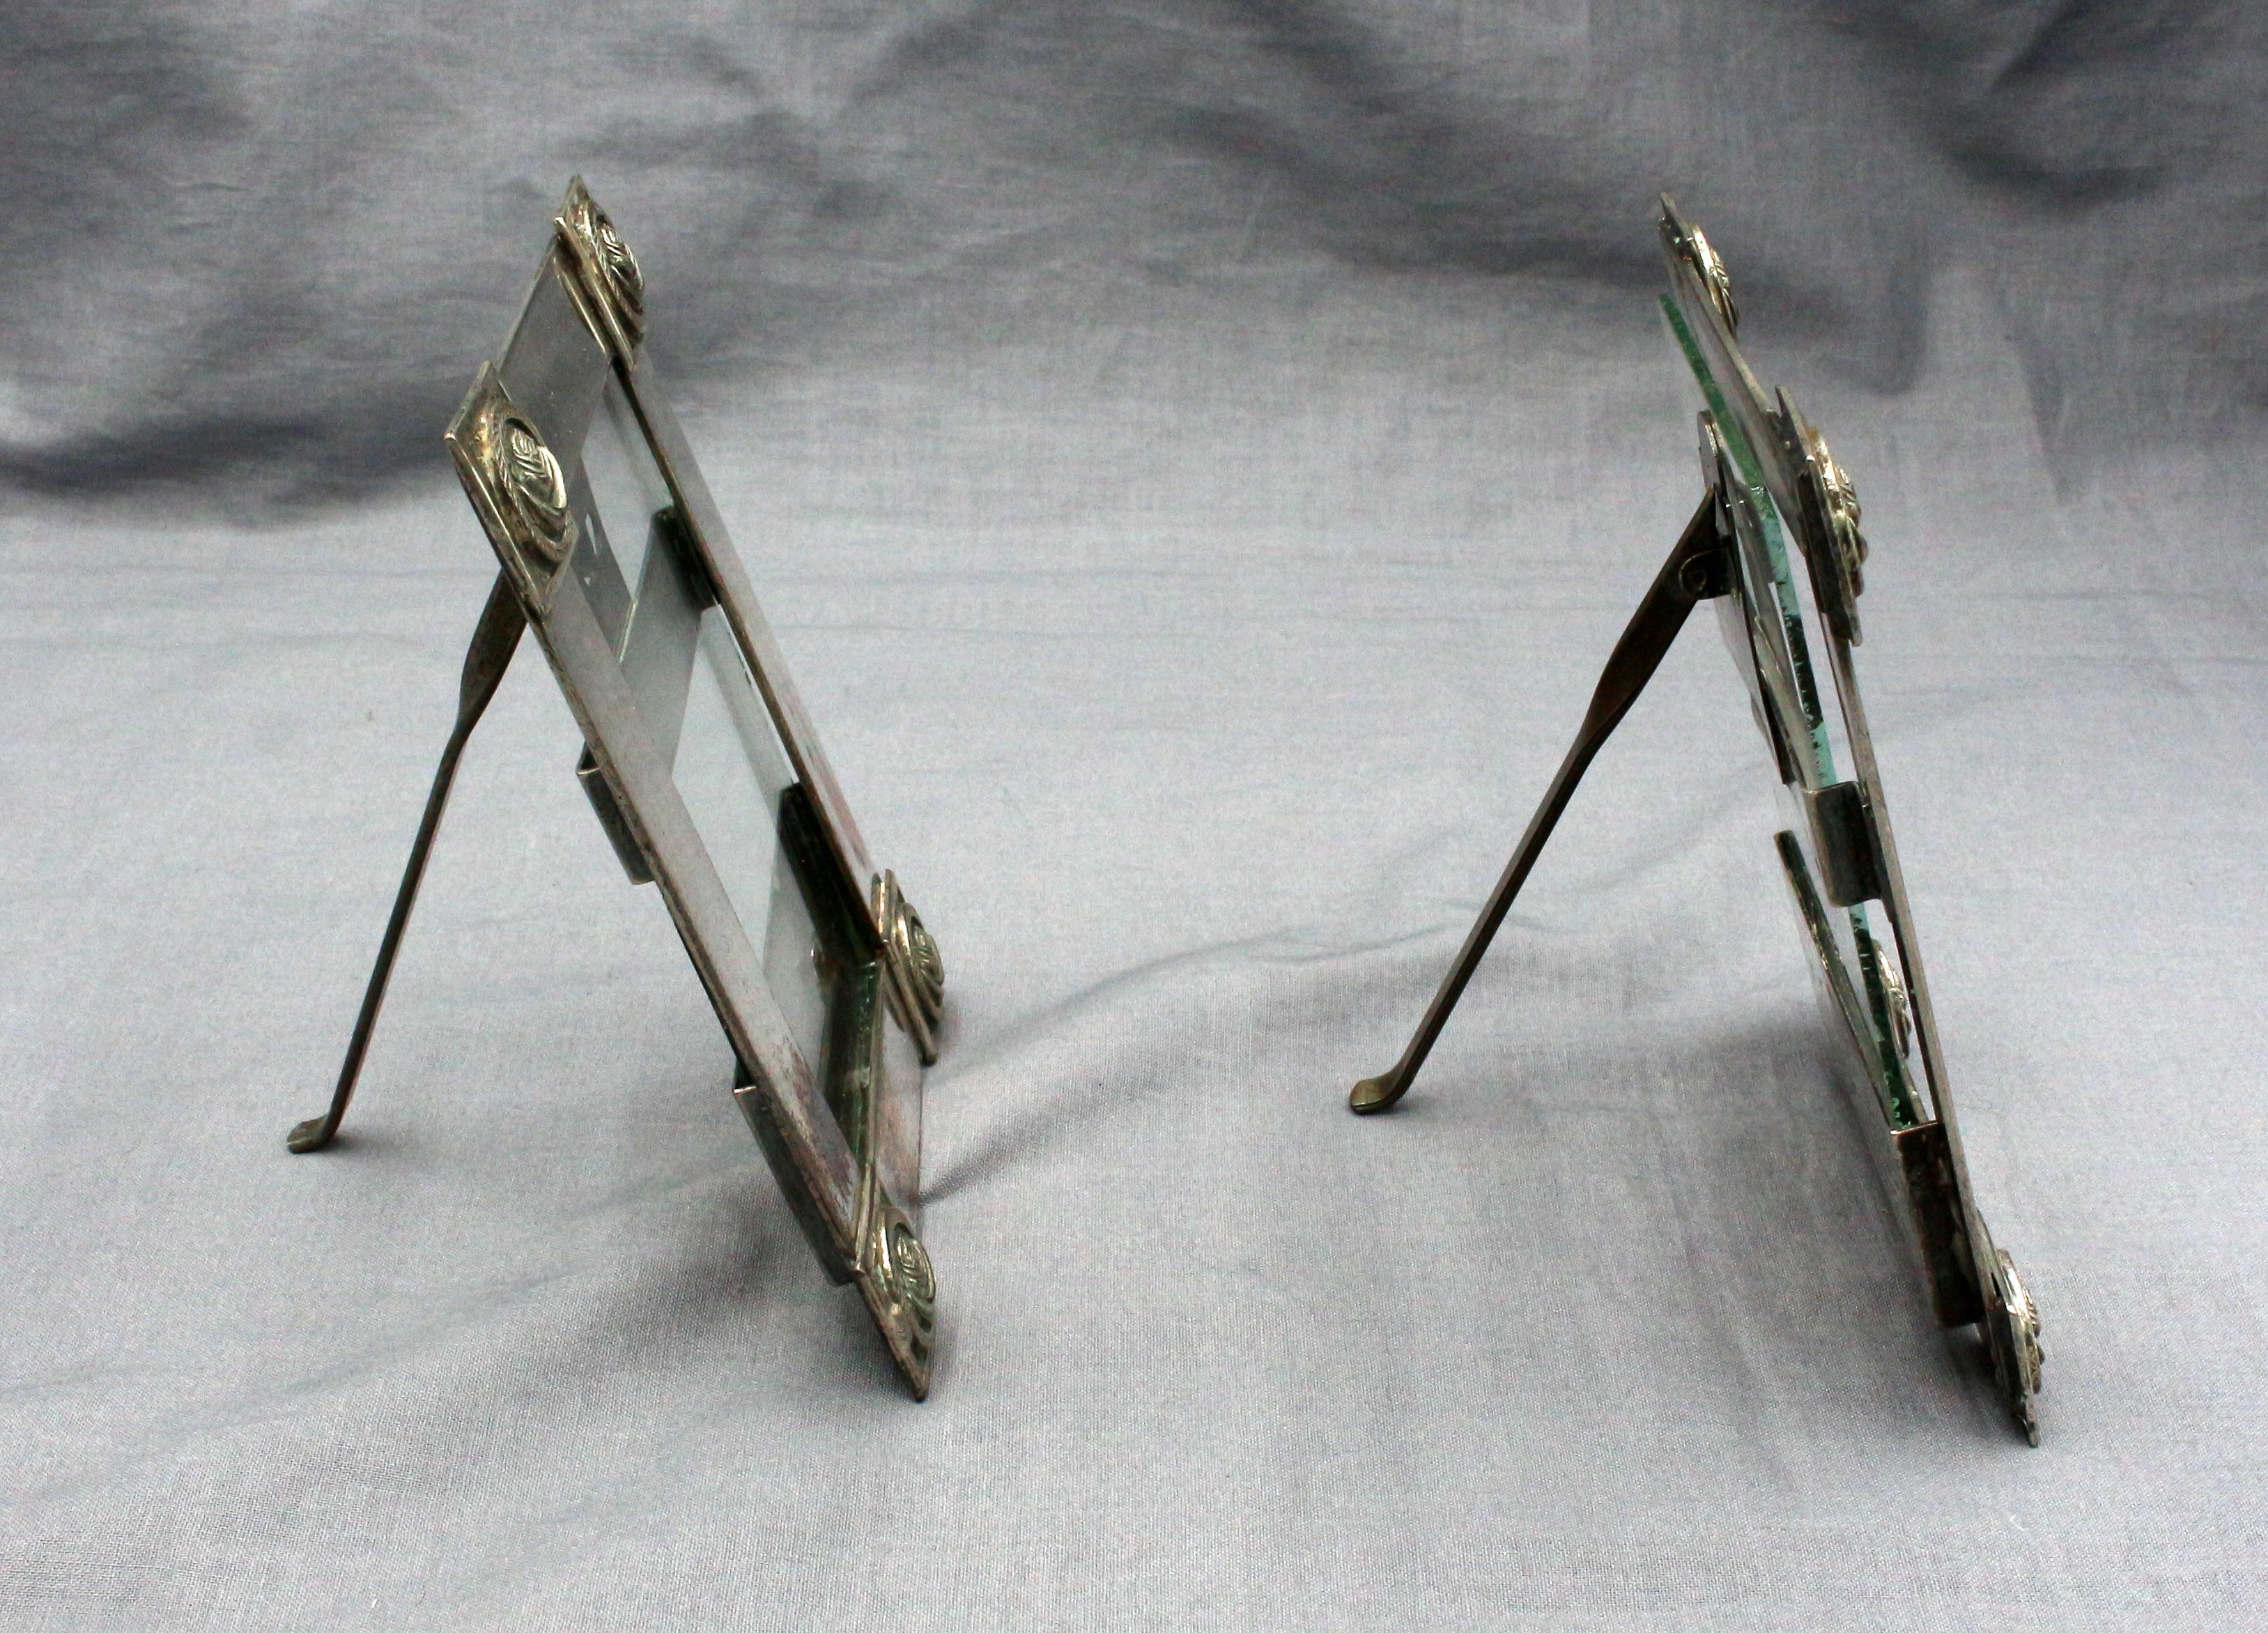 Paar kleine Bilderrahmen aus Silber und Silber auf Kupfer mit Staffeleiständern, finnisch, um 1880-1920. Kunsthandwerk, handgefertigt. Die Eckbuckel sind aus massivem Silber gegossen. Drehzapfen ersetzt.
5